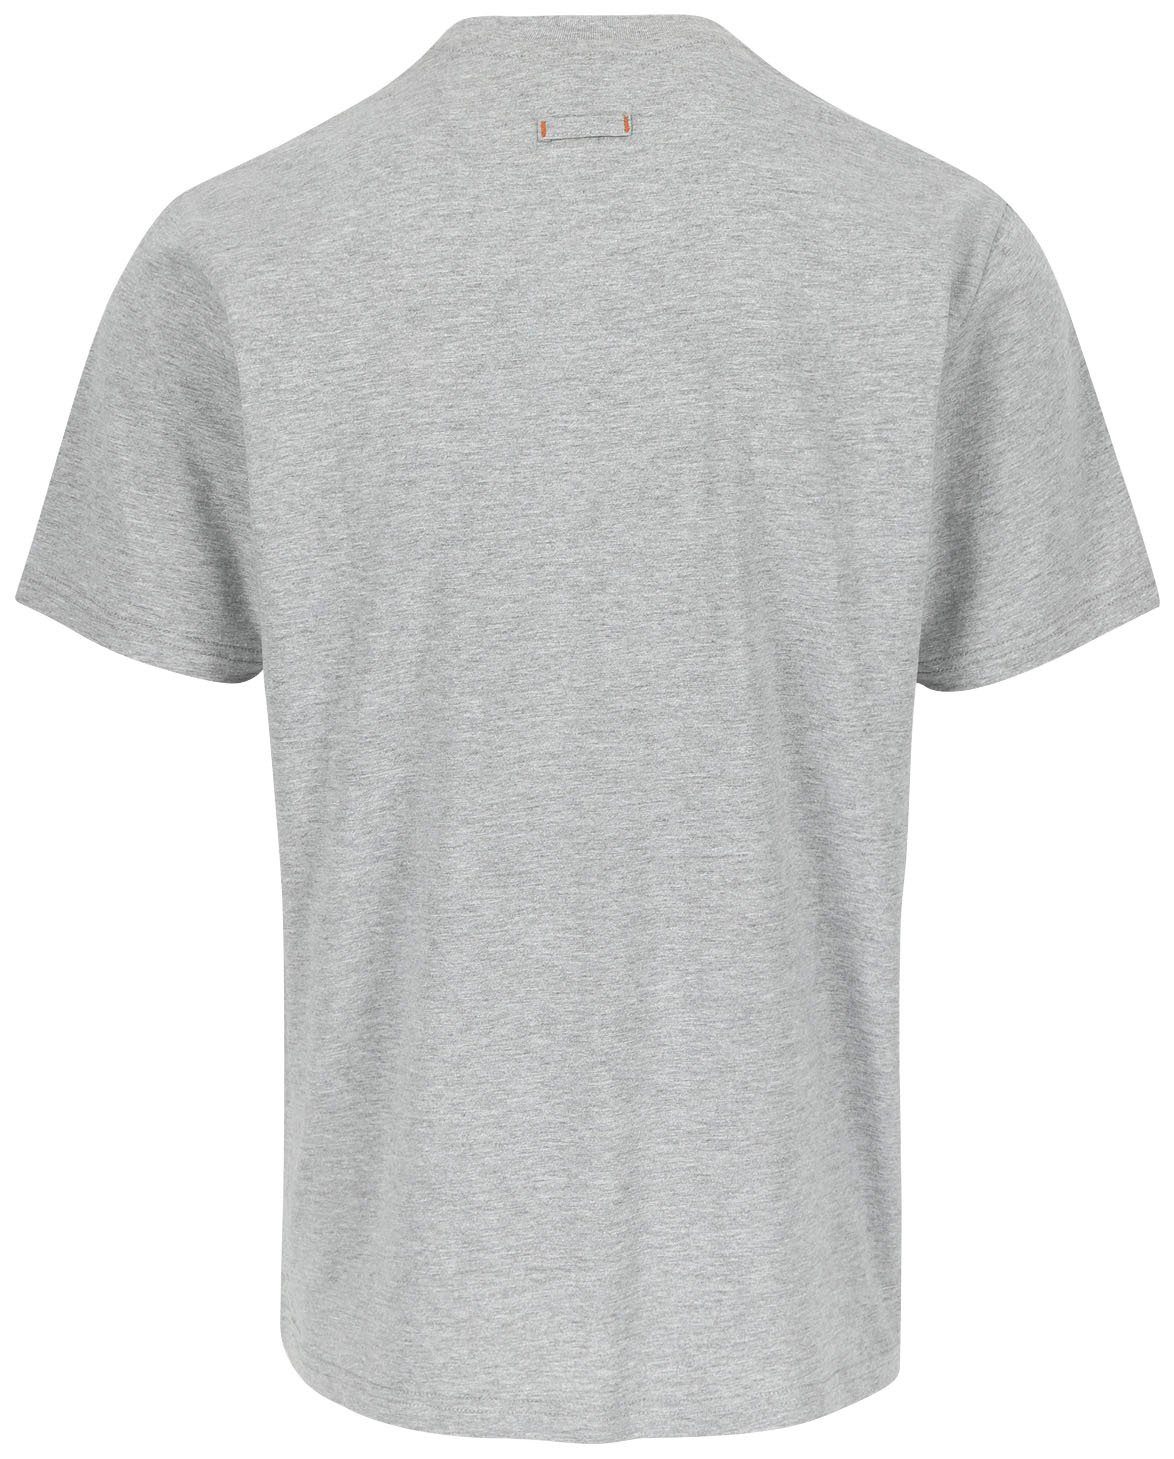 mit Herock®-Aufdruck, T-Shirt grau angenehmes Baumwolle, Rundhals, Herock ENI Tragegefühl